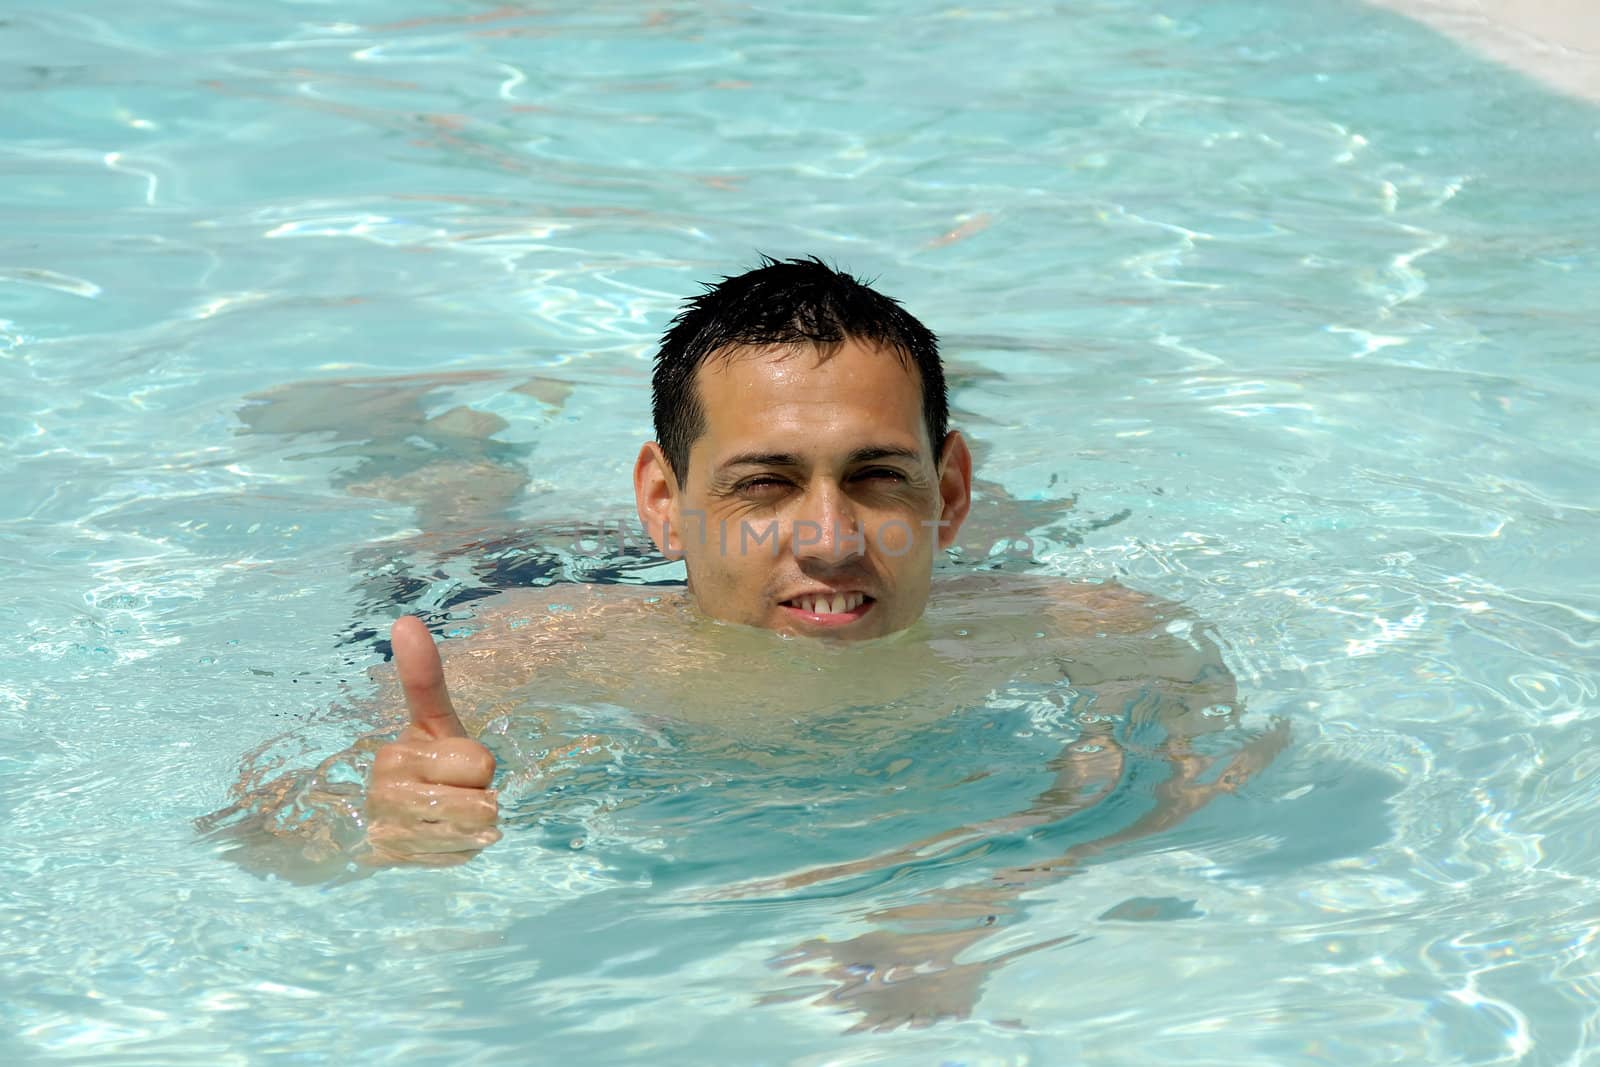 Happy man in pool by cfoto